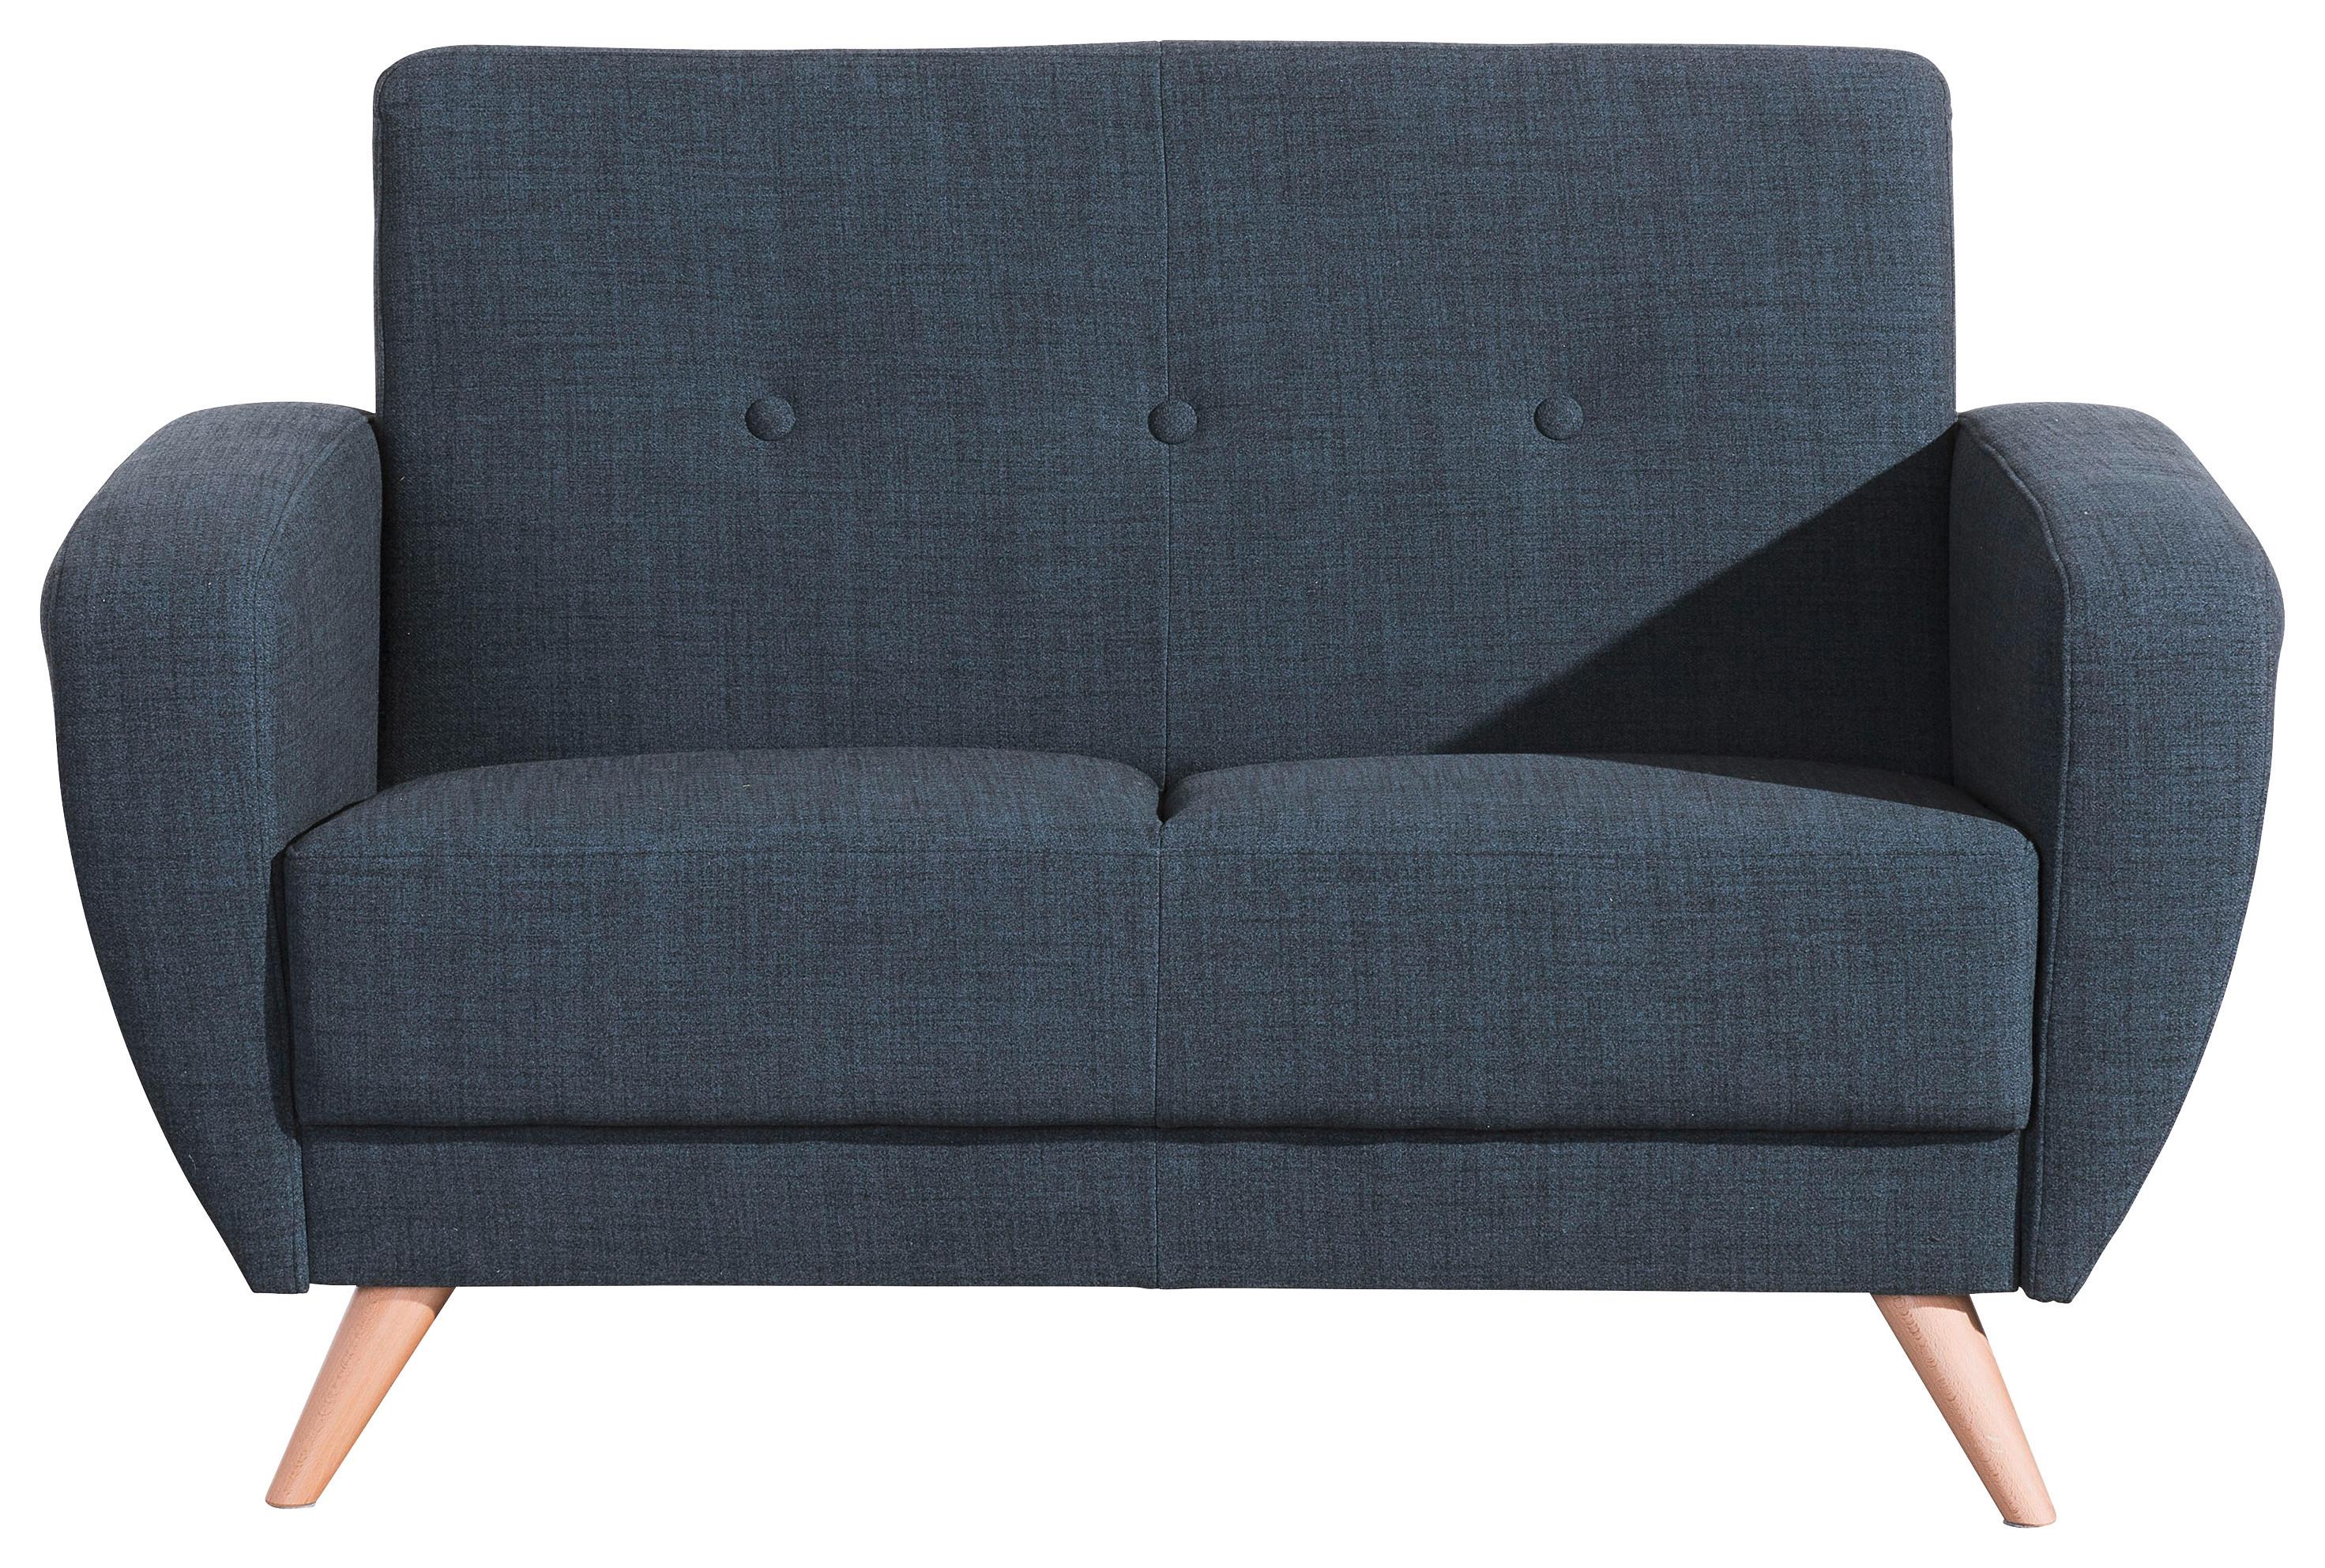 2-Sitzer-Sofa Jerry Rücken Echt, Blau - Blau/Naturfarben, Design, Textil (136/85/82cm) - Max Winzer